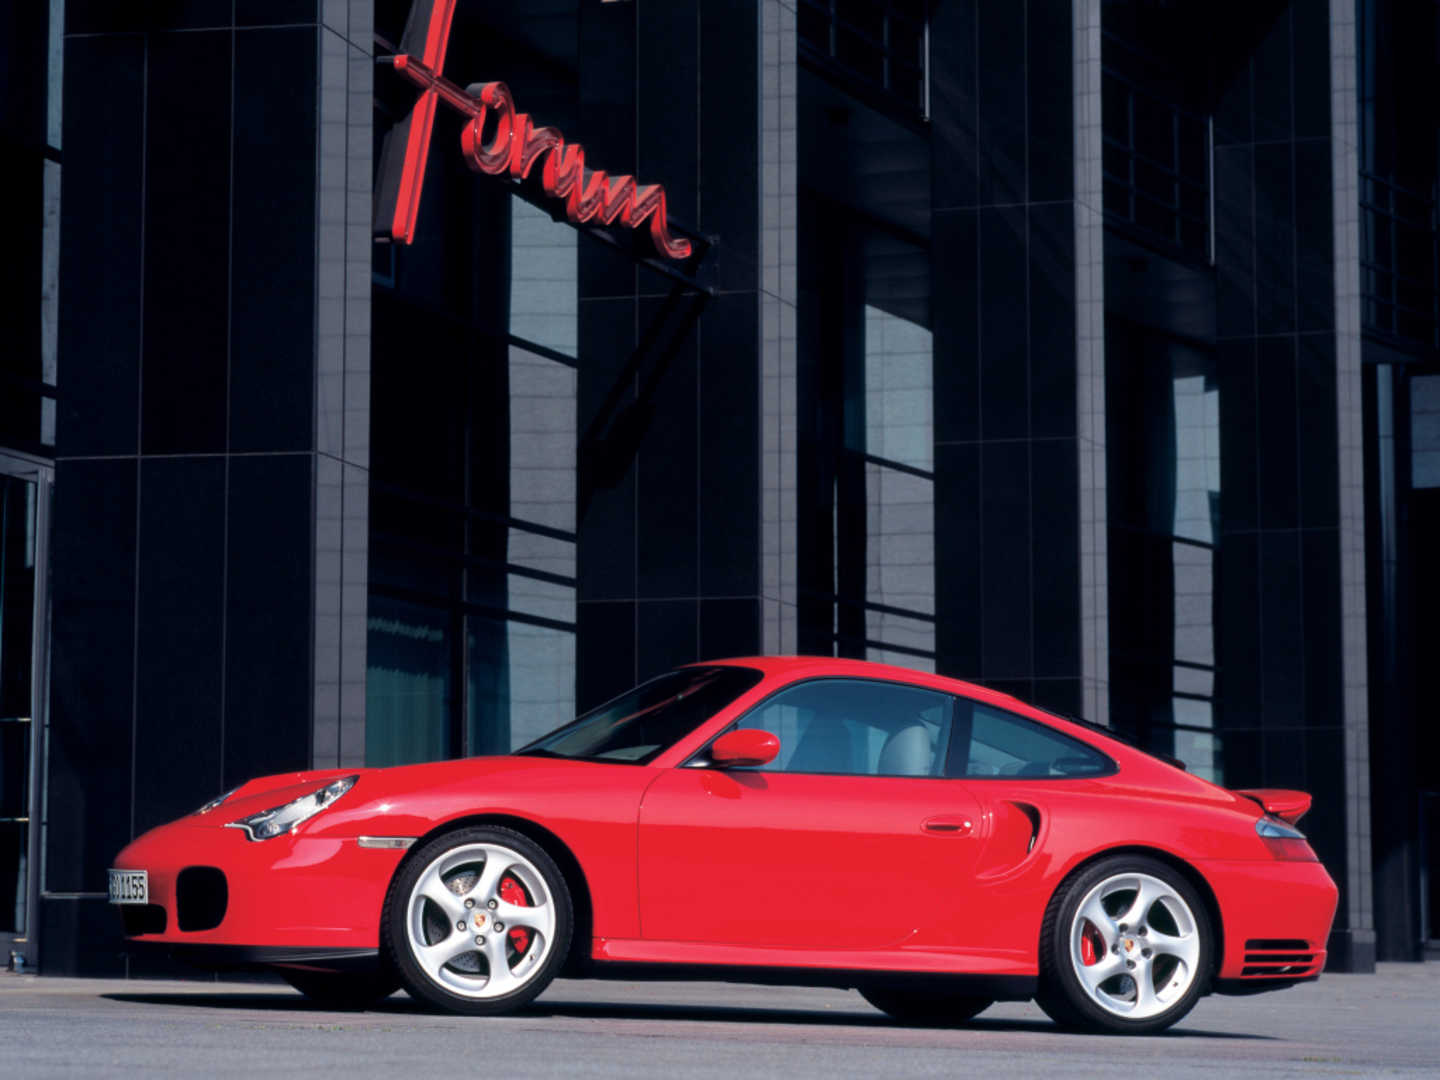 Porsche 911 "996" rouge vue de profil en bas d'un immeuble